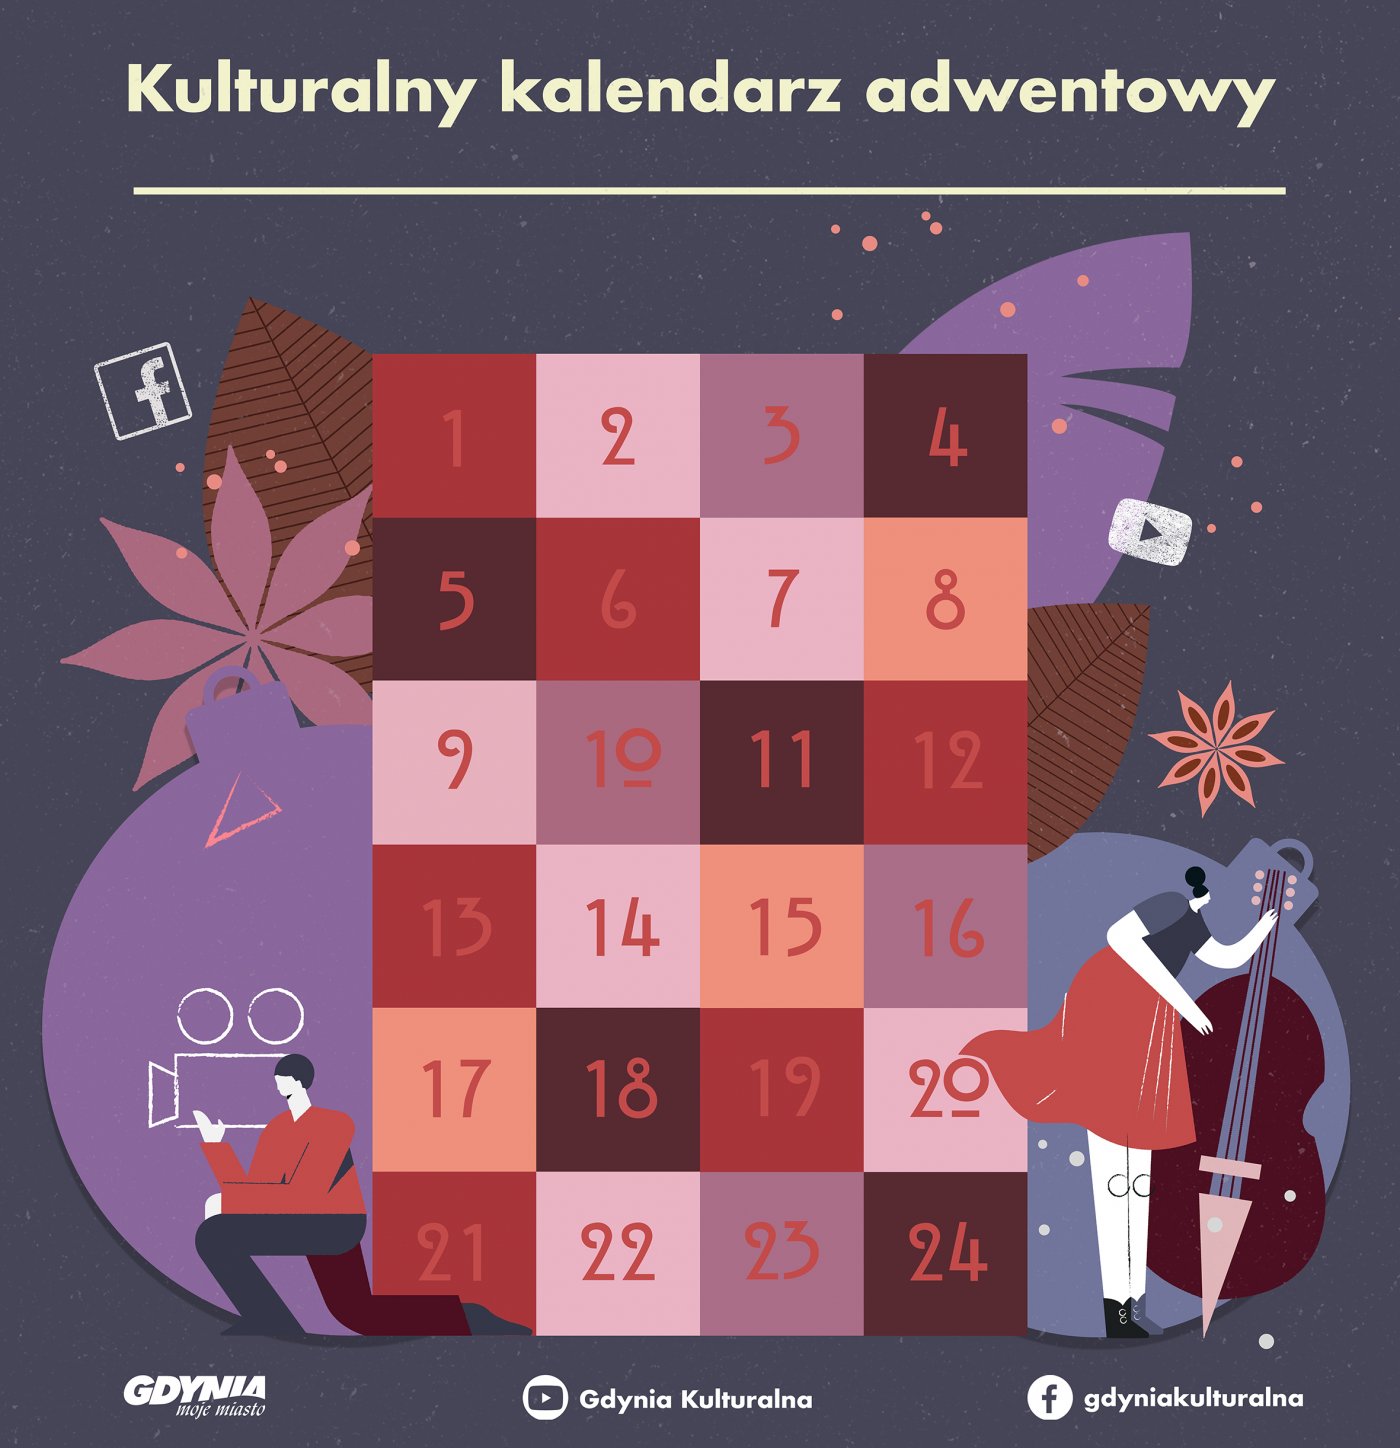 Kulturalny kalendarz adwentowy od Gdyni Kulturalnej